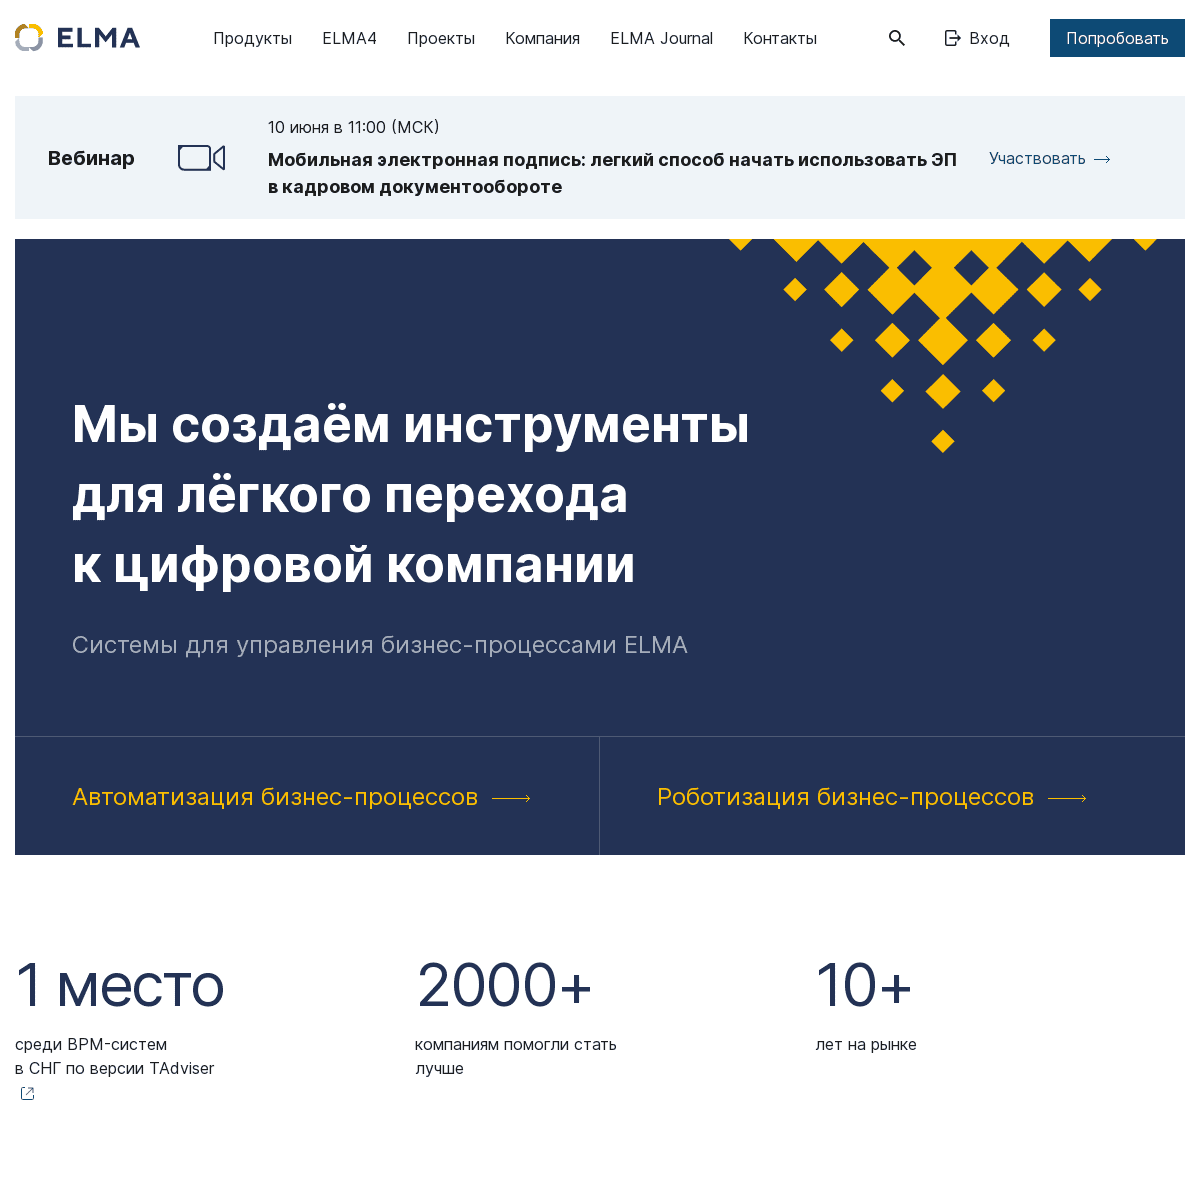 A complete backup of https://elma-bpm.ru